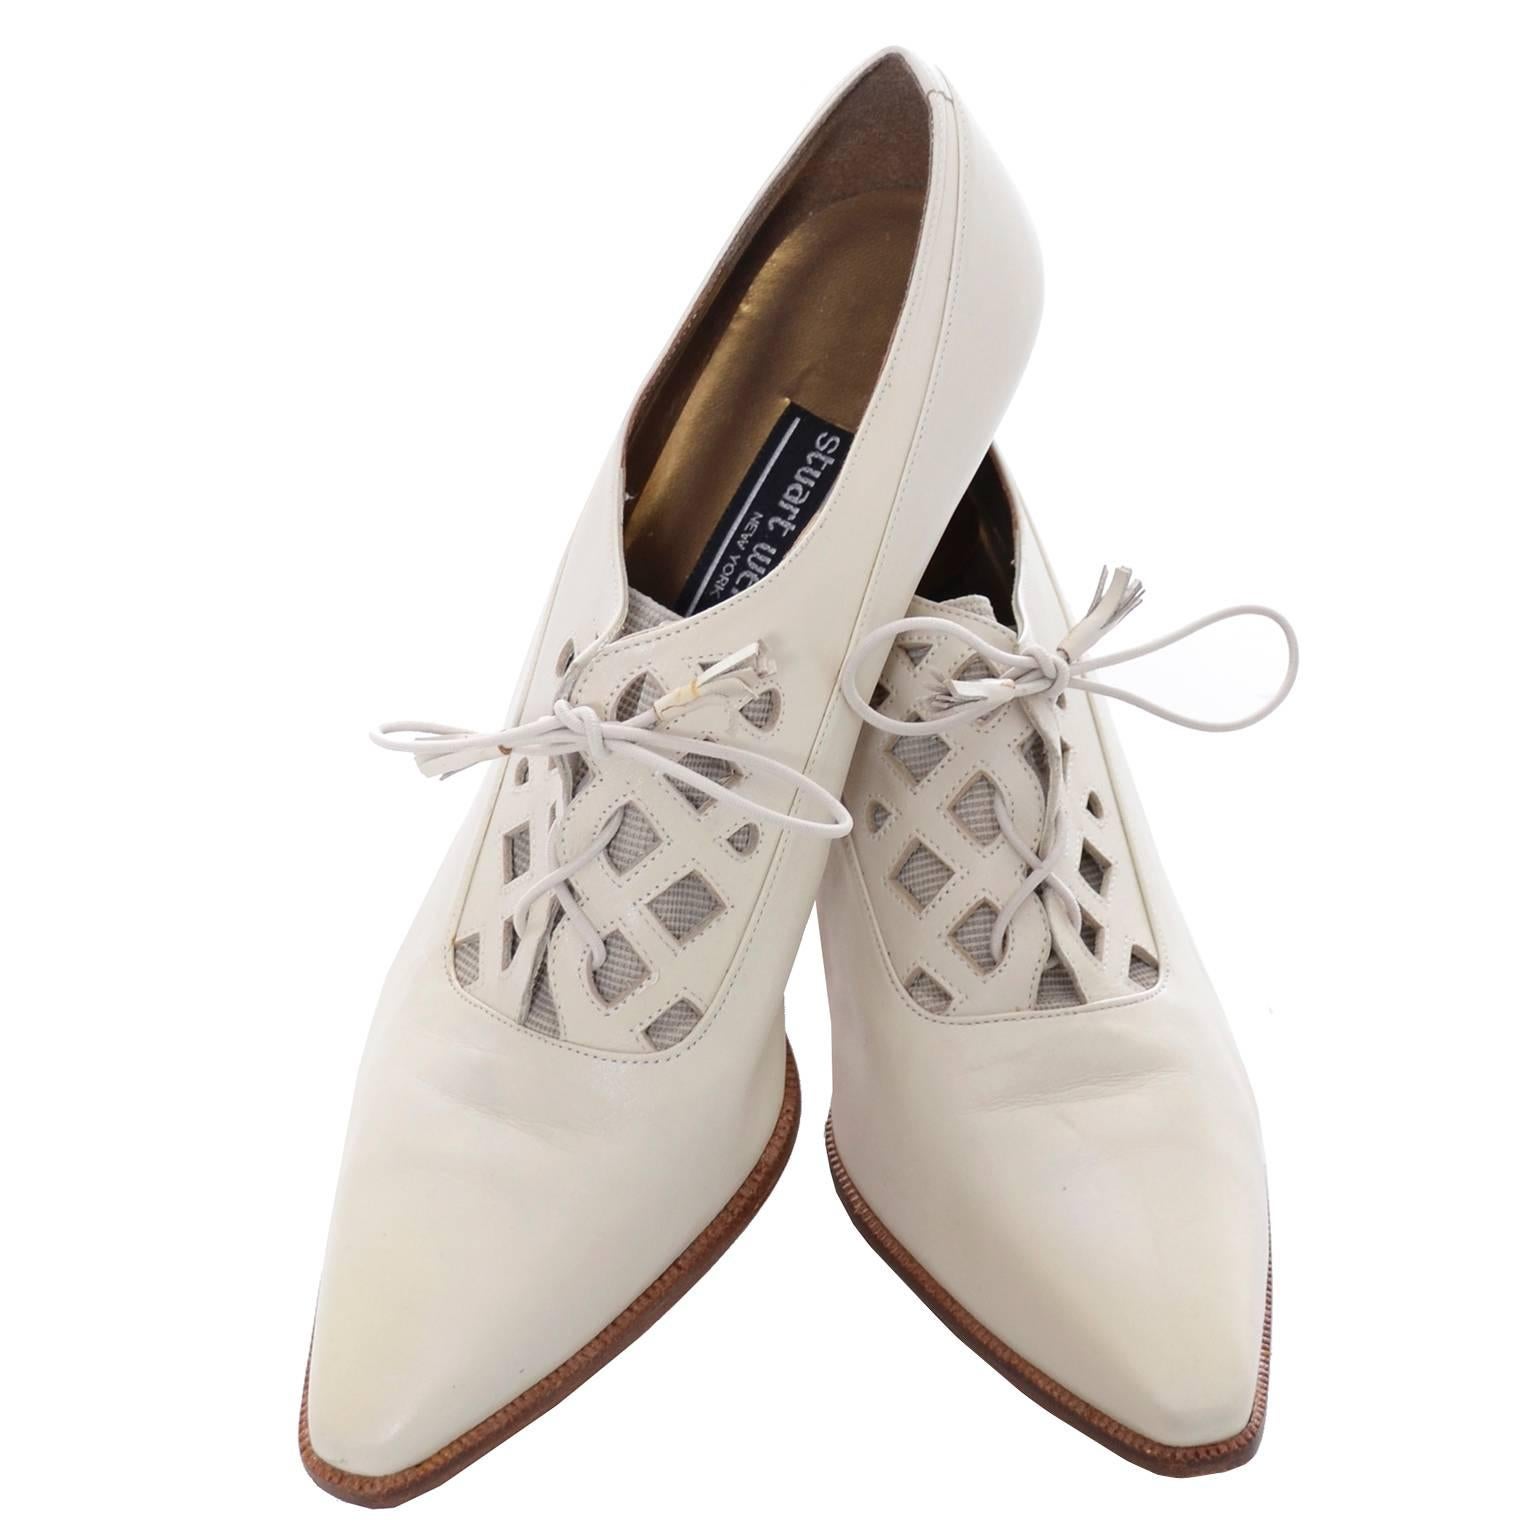 Vintage Stuart Weitzman Shoes 1980s Lace up Victorian Revival Oxfords Spain 8.5